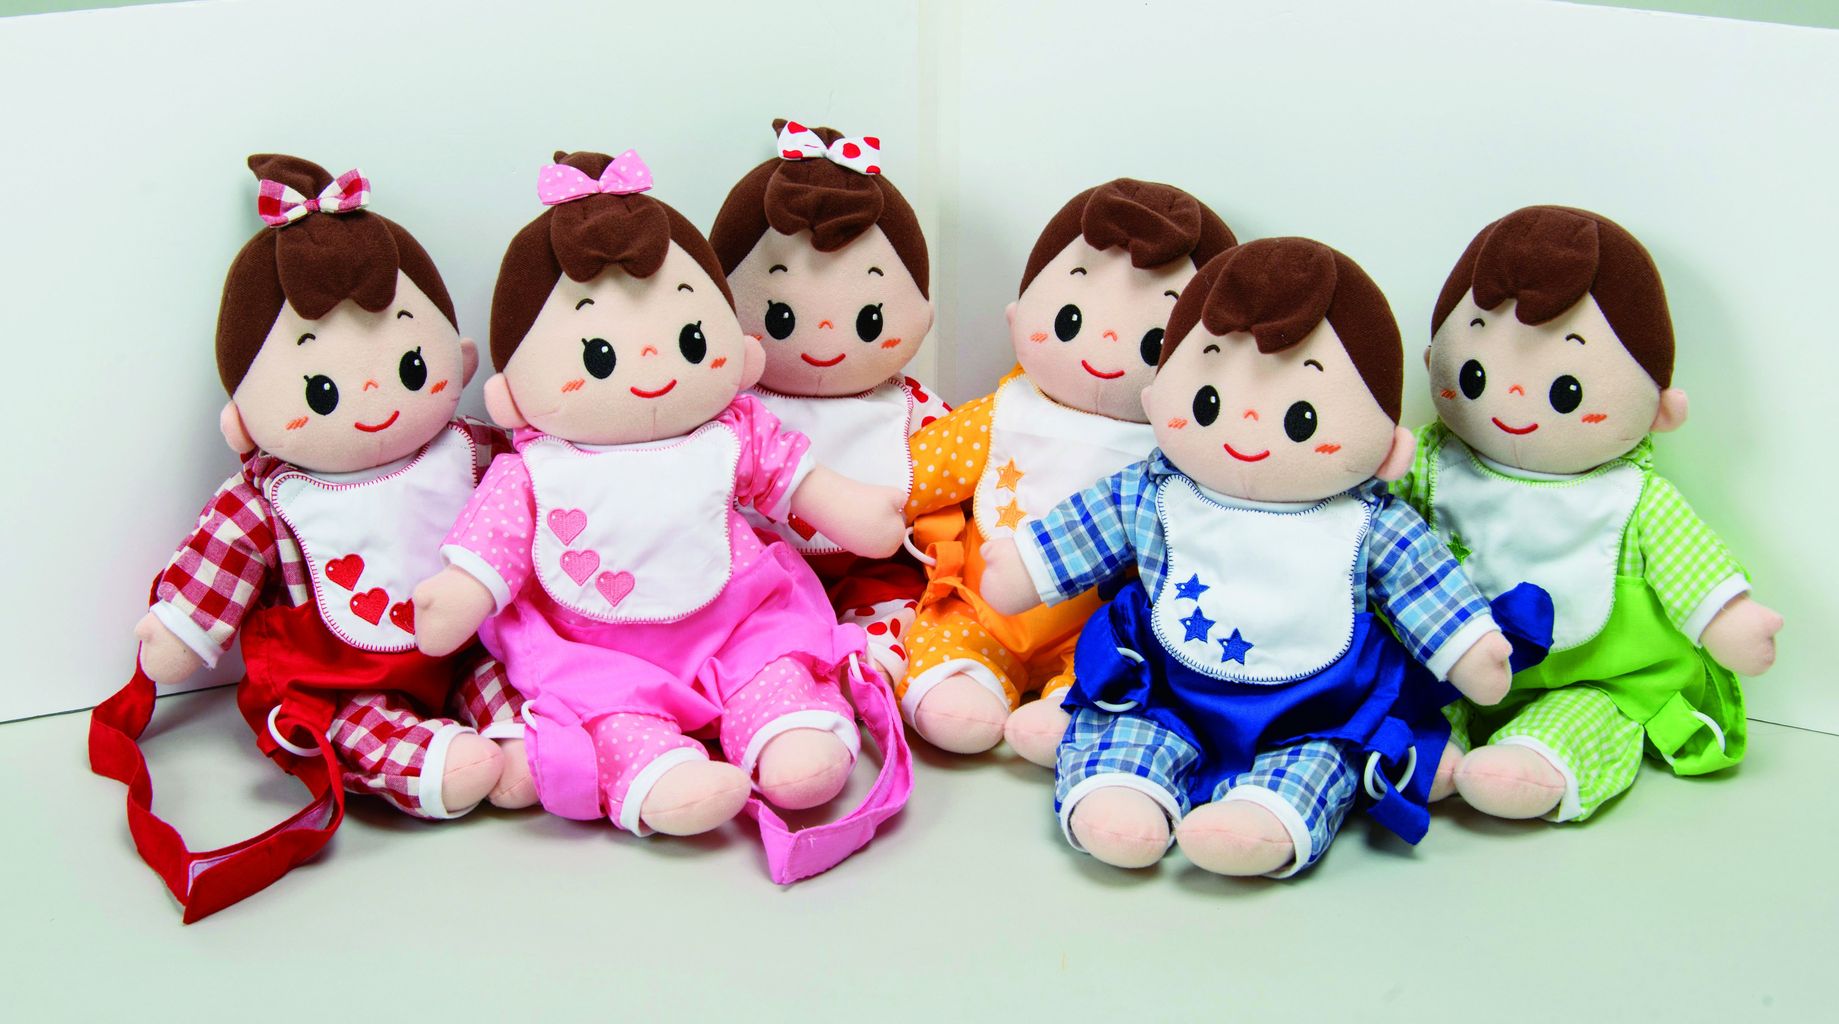 乳児さんも楽しい【みんなであそべる赤ちゃん人形セット6体組】 : メイト通信